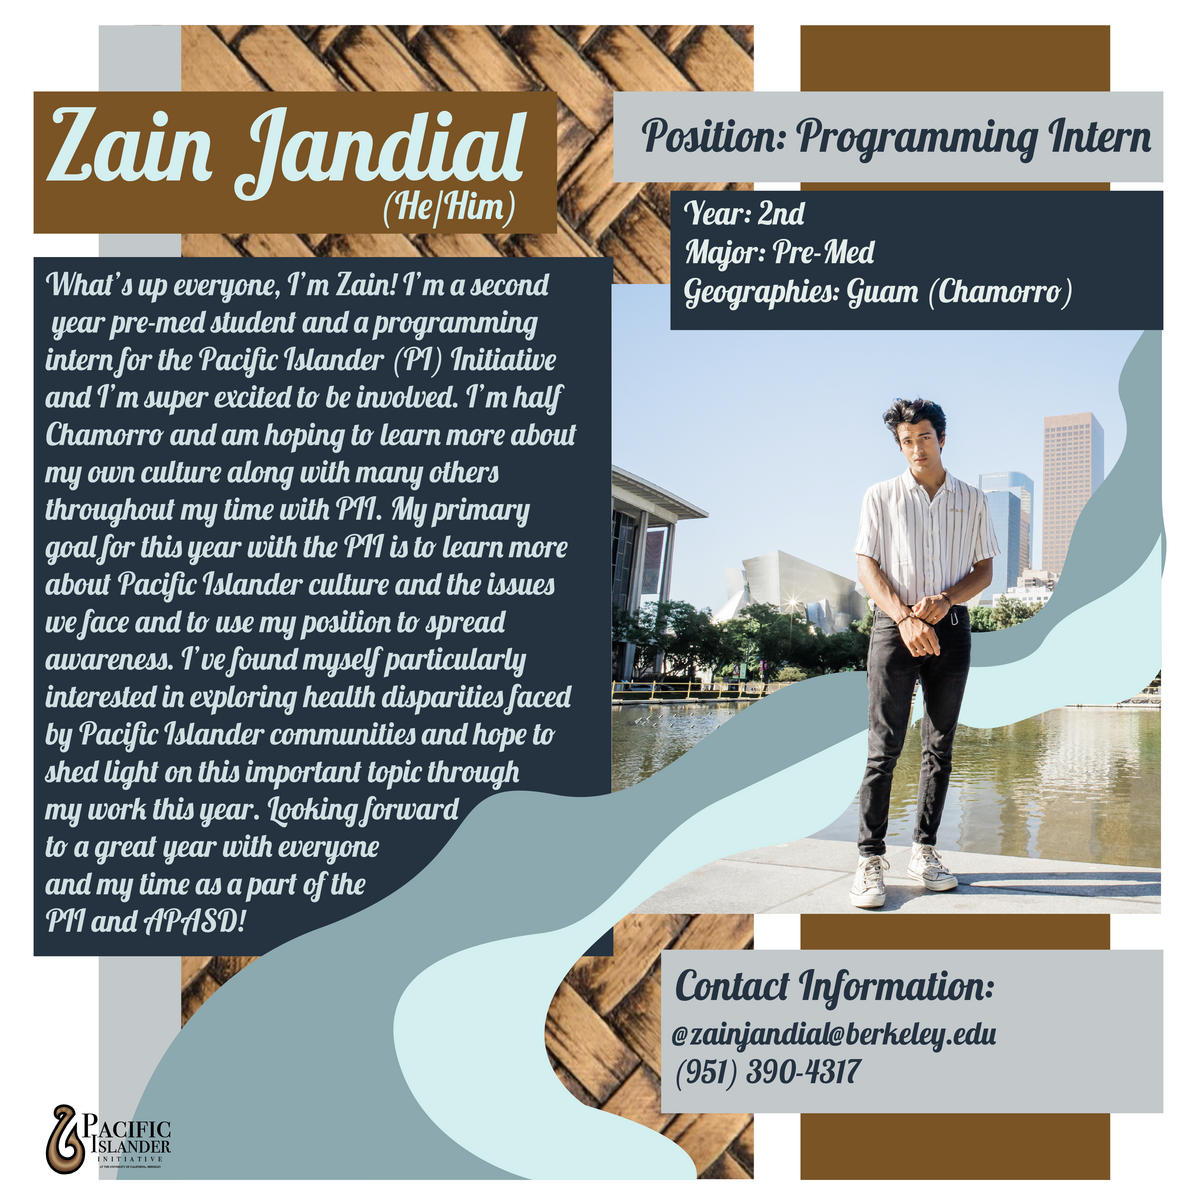 Contact Zain Jandial (Programming Intern) at zainjandial@berkeley.edd